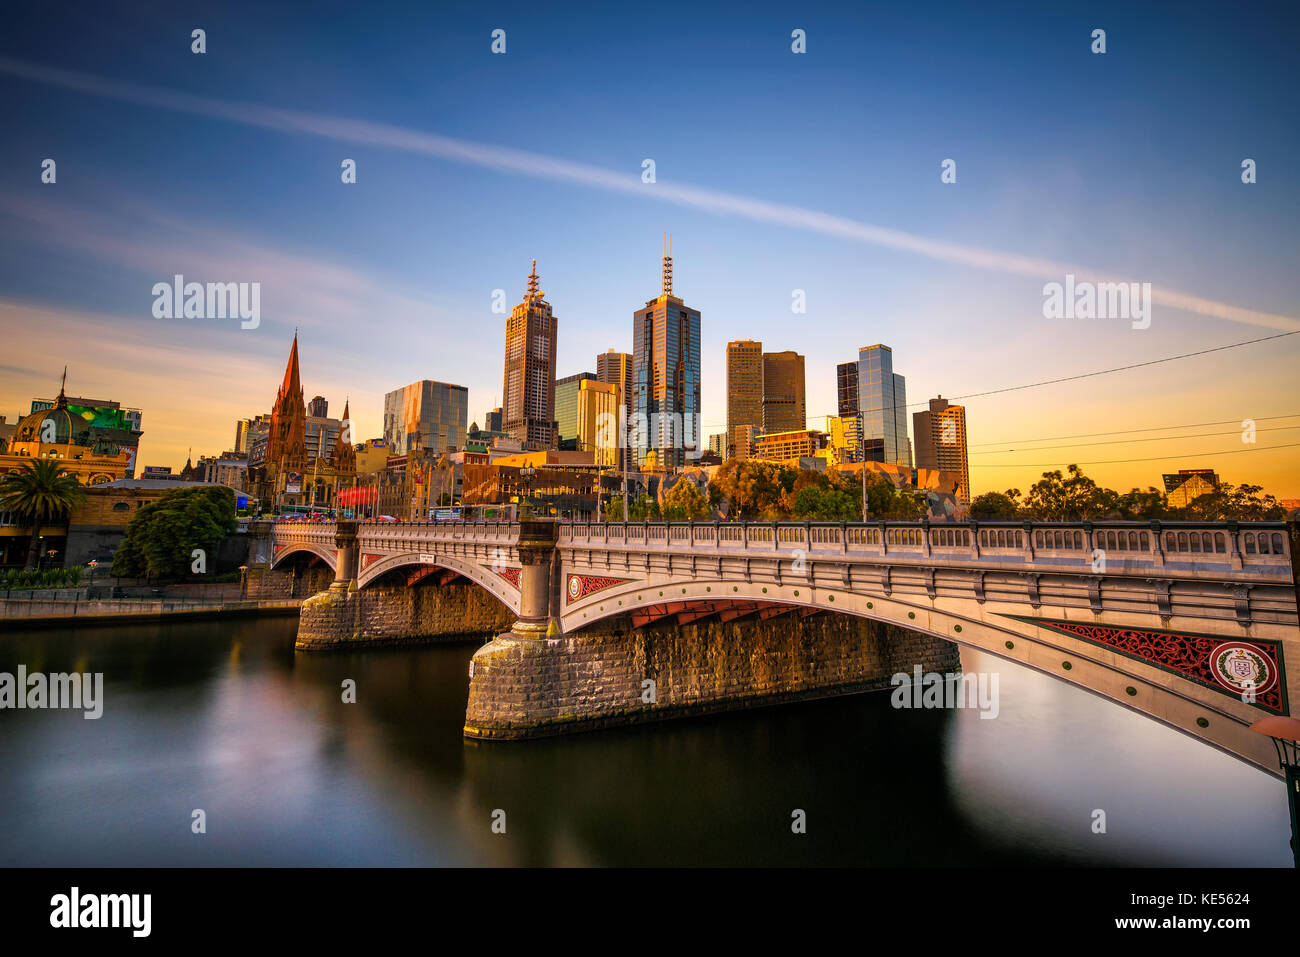 Tramonto sulla skyline del centro cittadino di Melbourne, la principessa e il ponte sul fiume Yarra Foto Stock